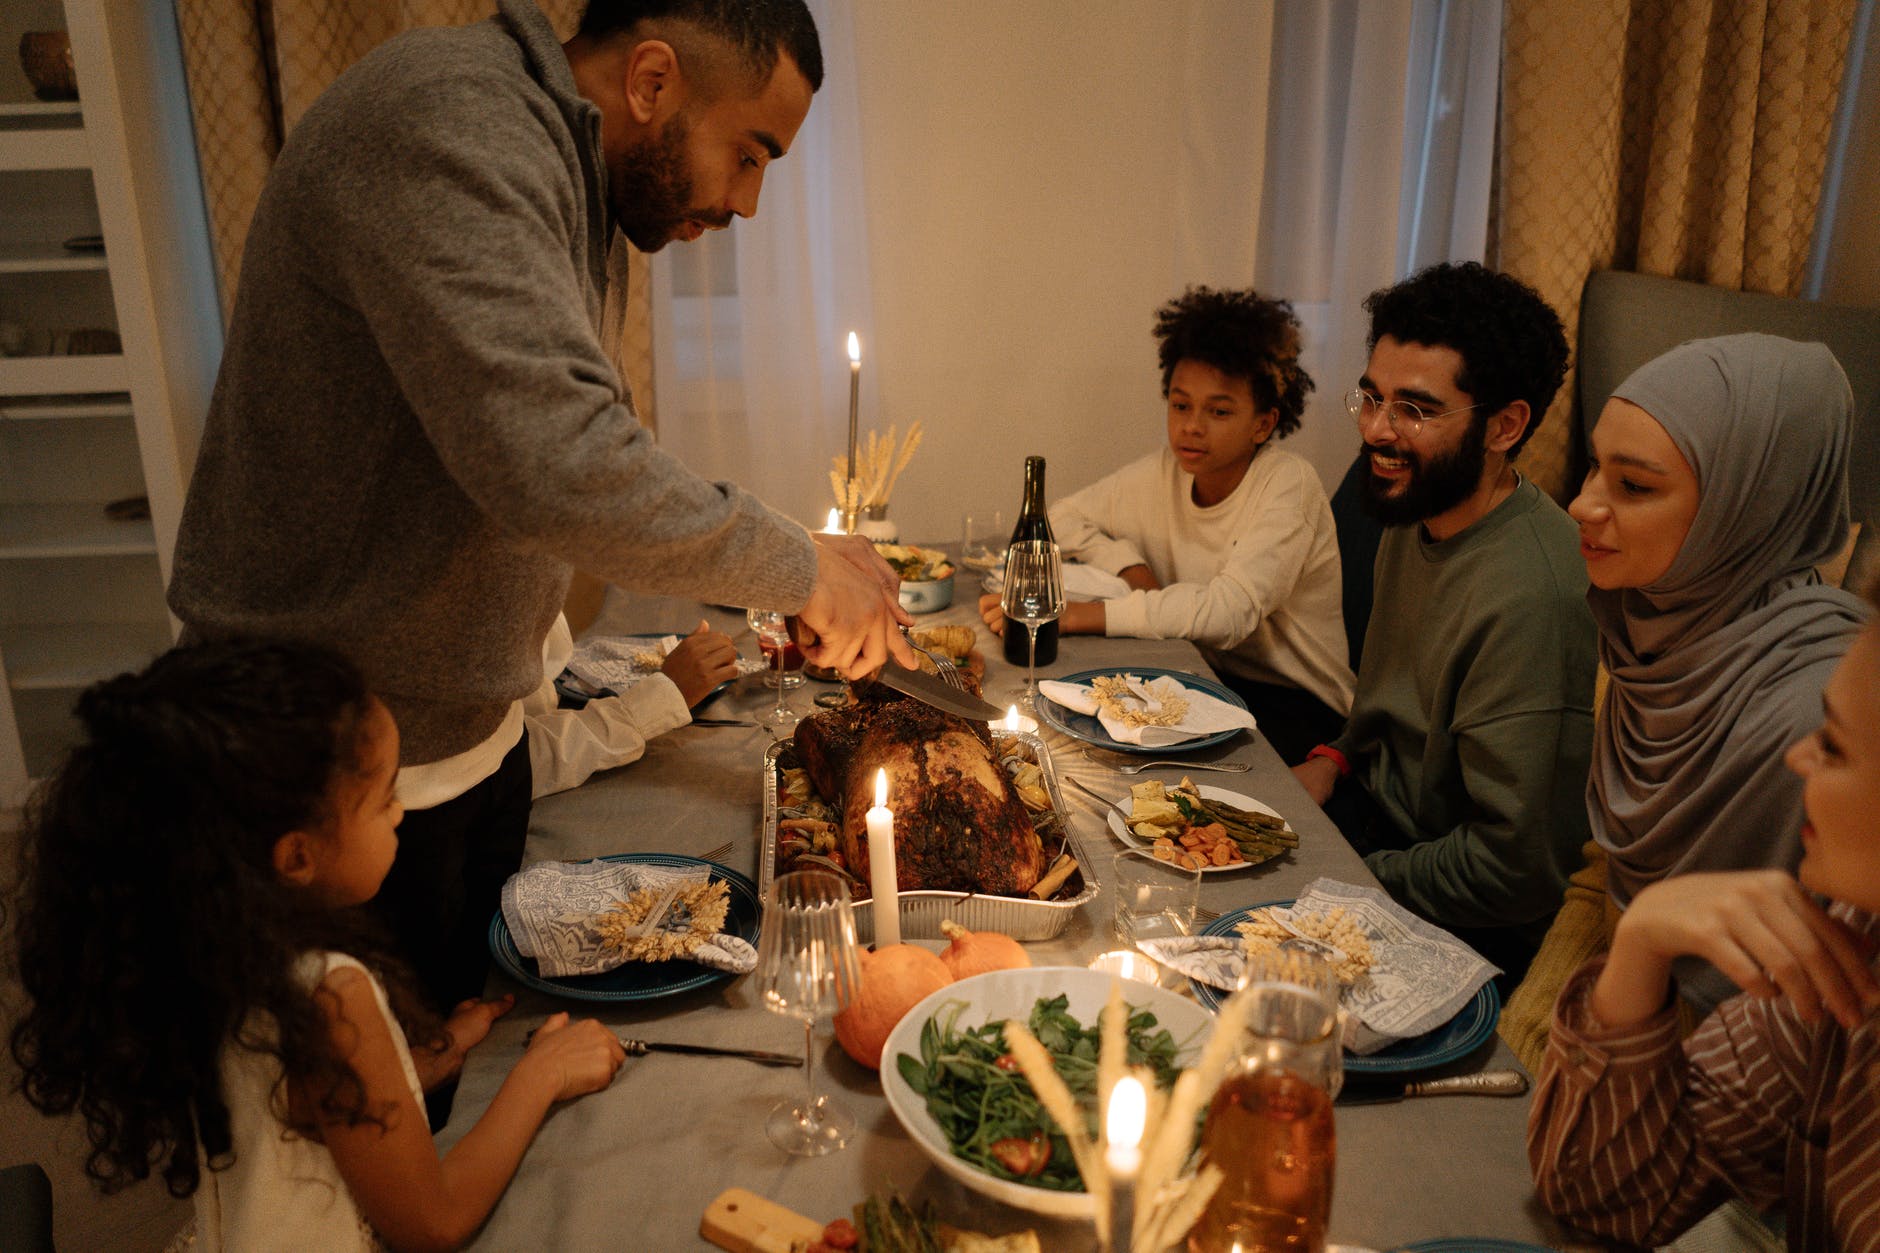 A family having dinner